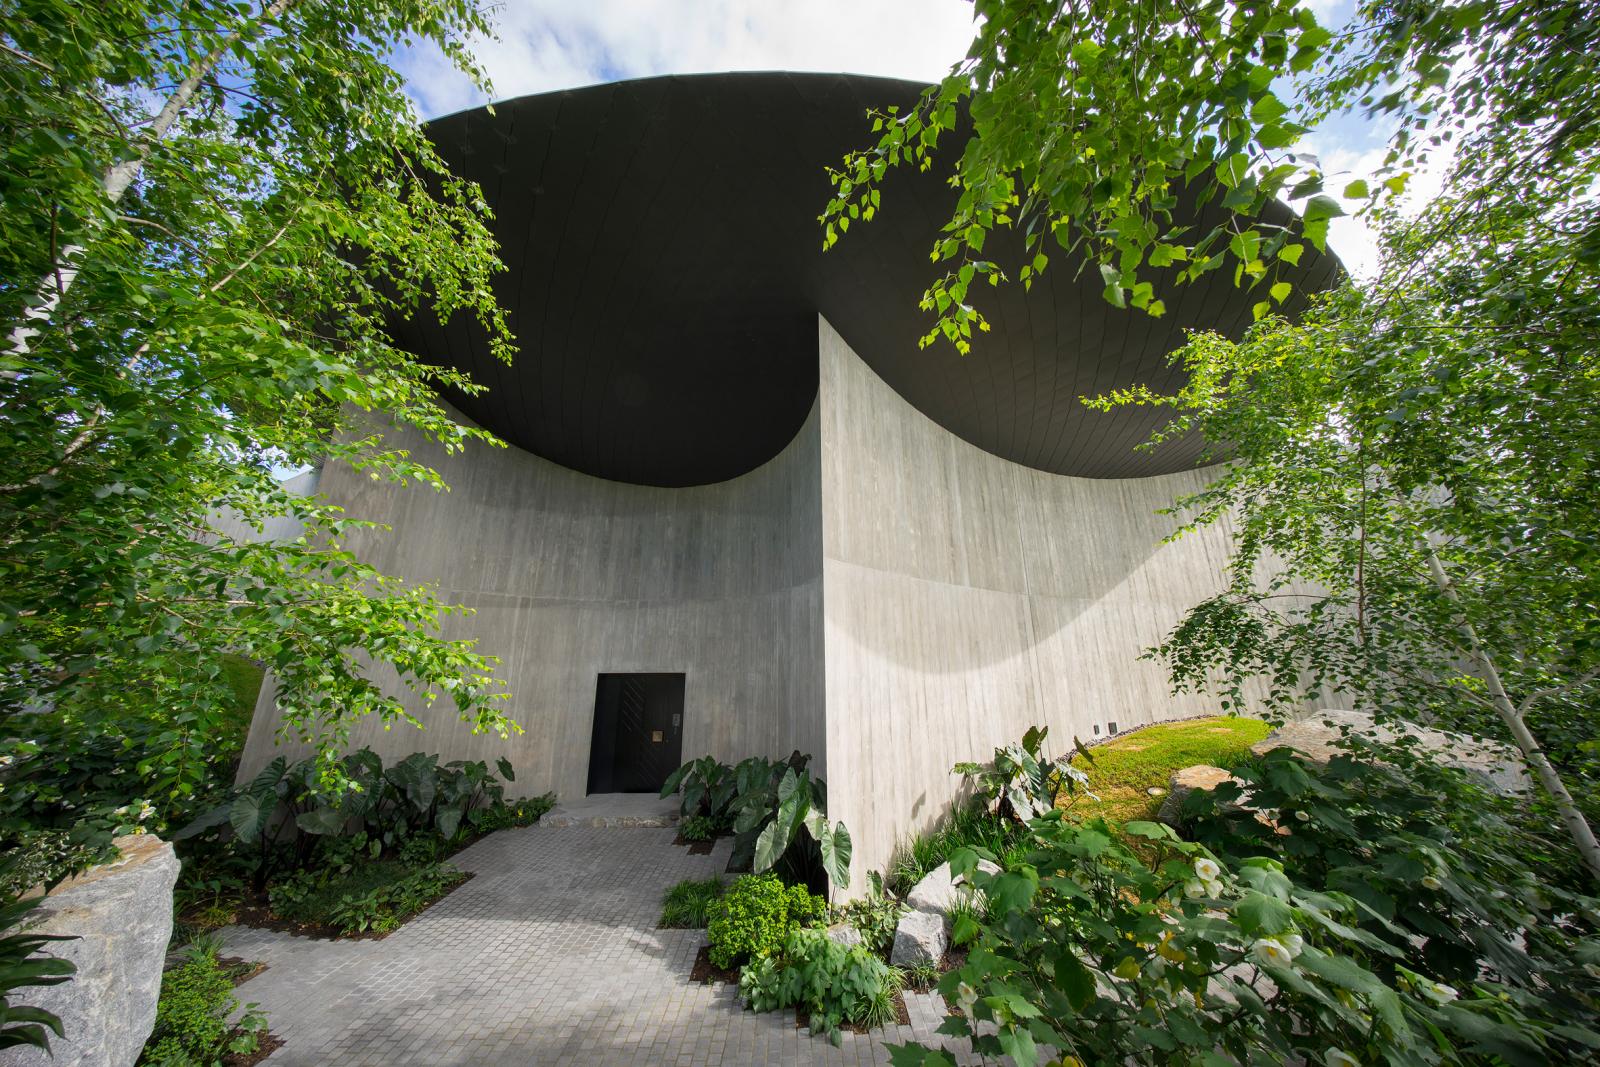 hình ảnh một góc nhà có mái hình đĩa ở Úc với tường bê tông uốn cong, vườn cây xanh tốt bao quanh